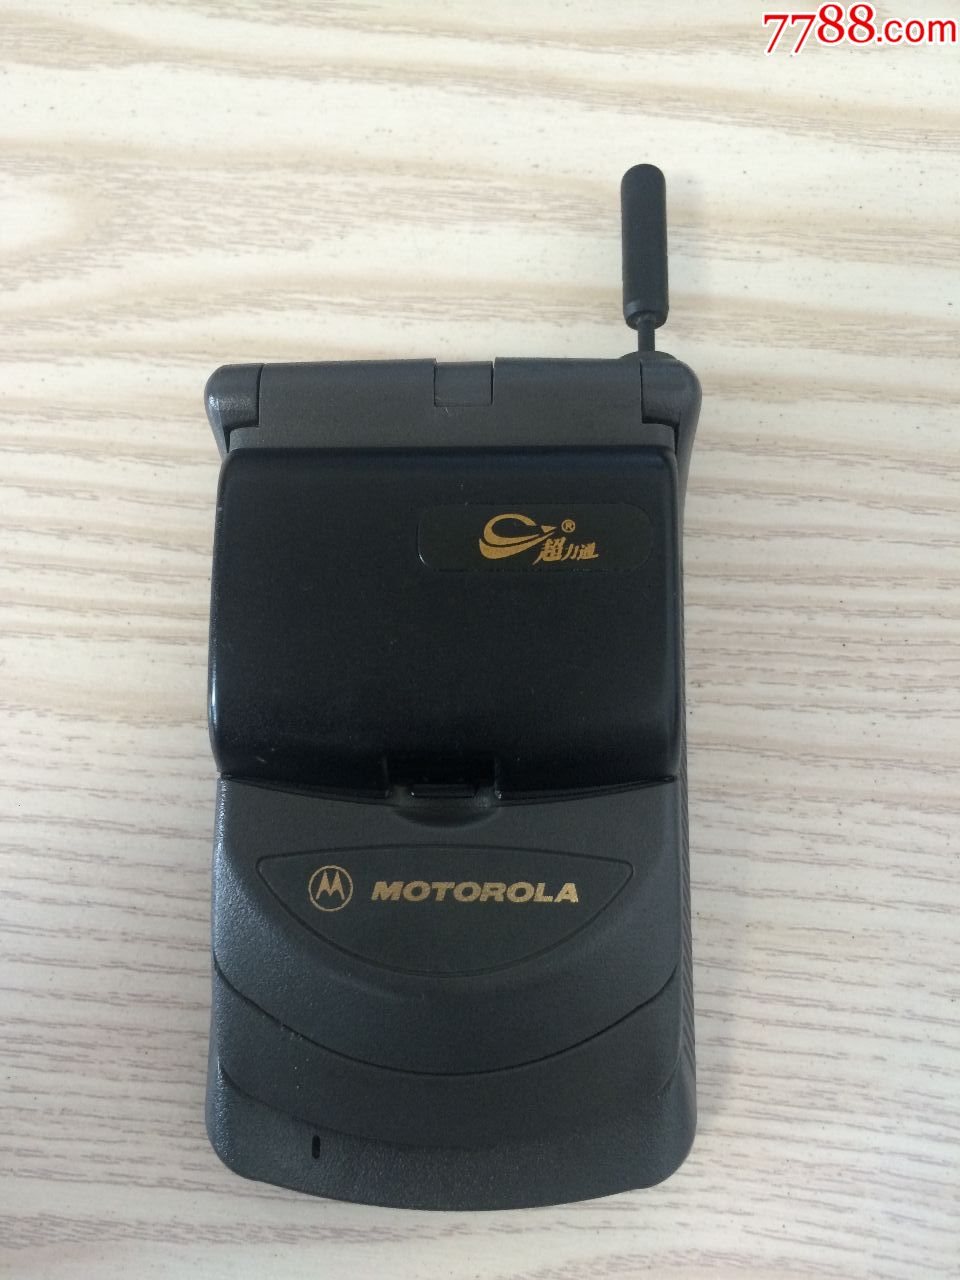 一个经典收藏摩托罗拉MOTOROLA翻盖手机。